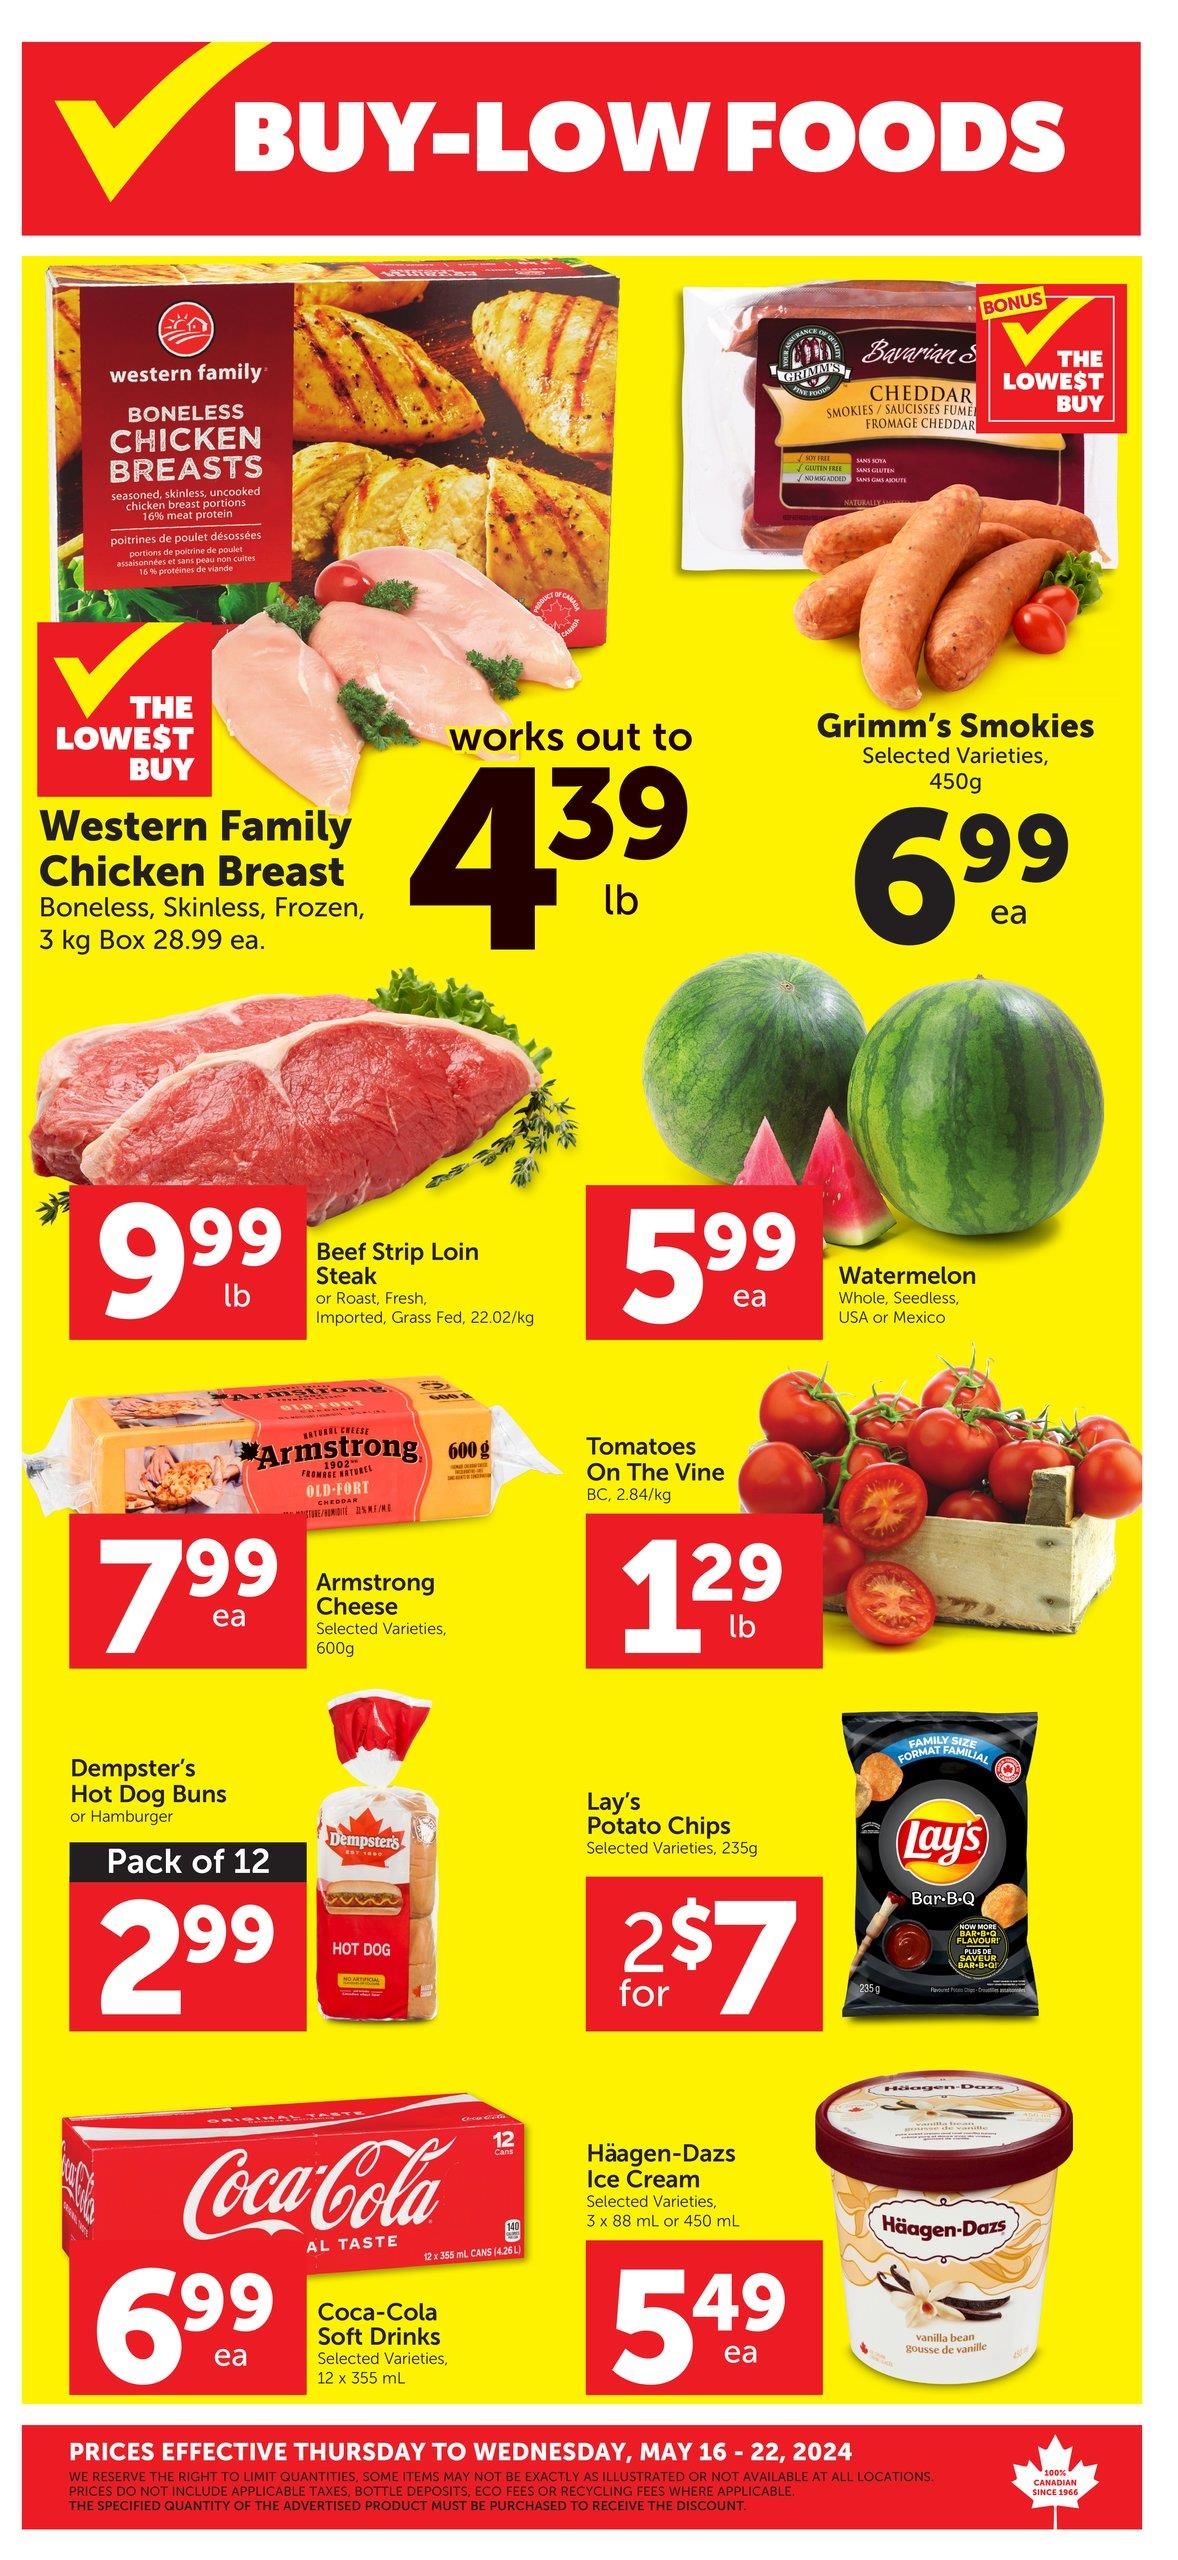 Buy-Low Foods - Weekly Flyer Specials